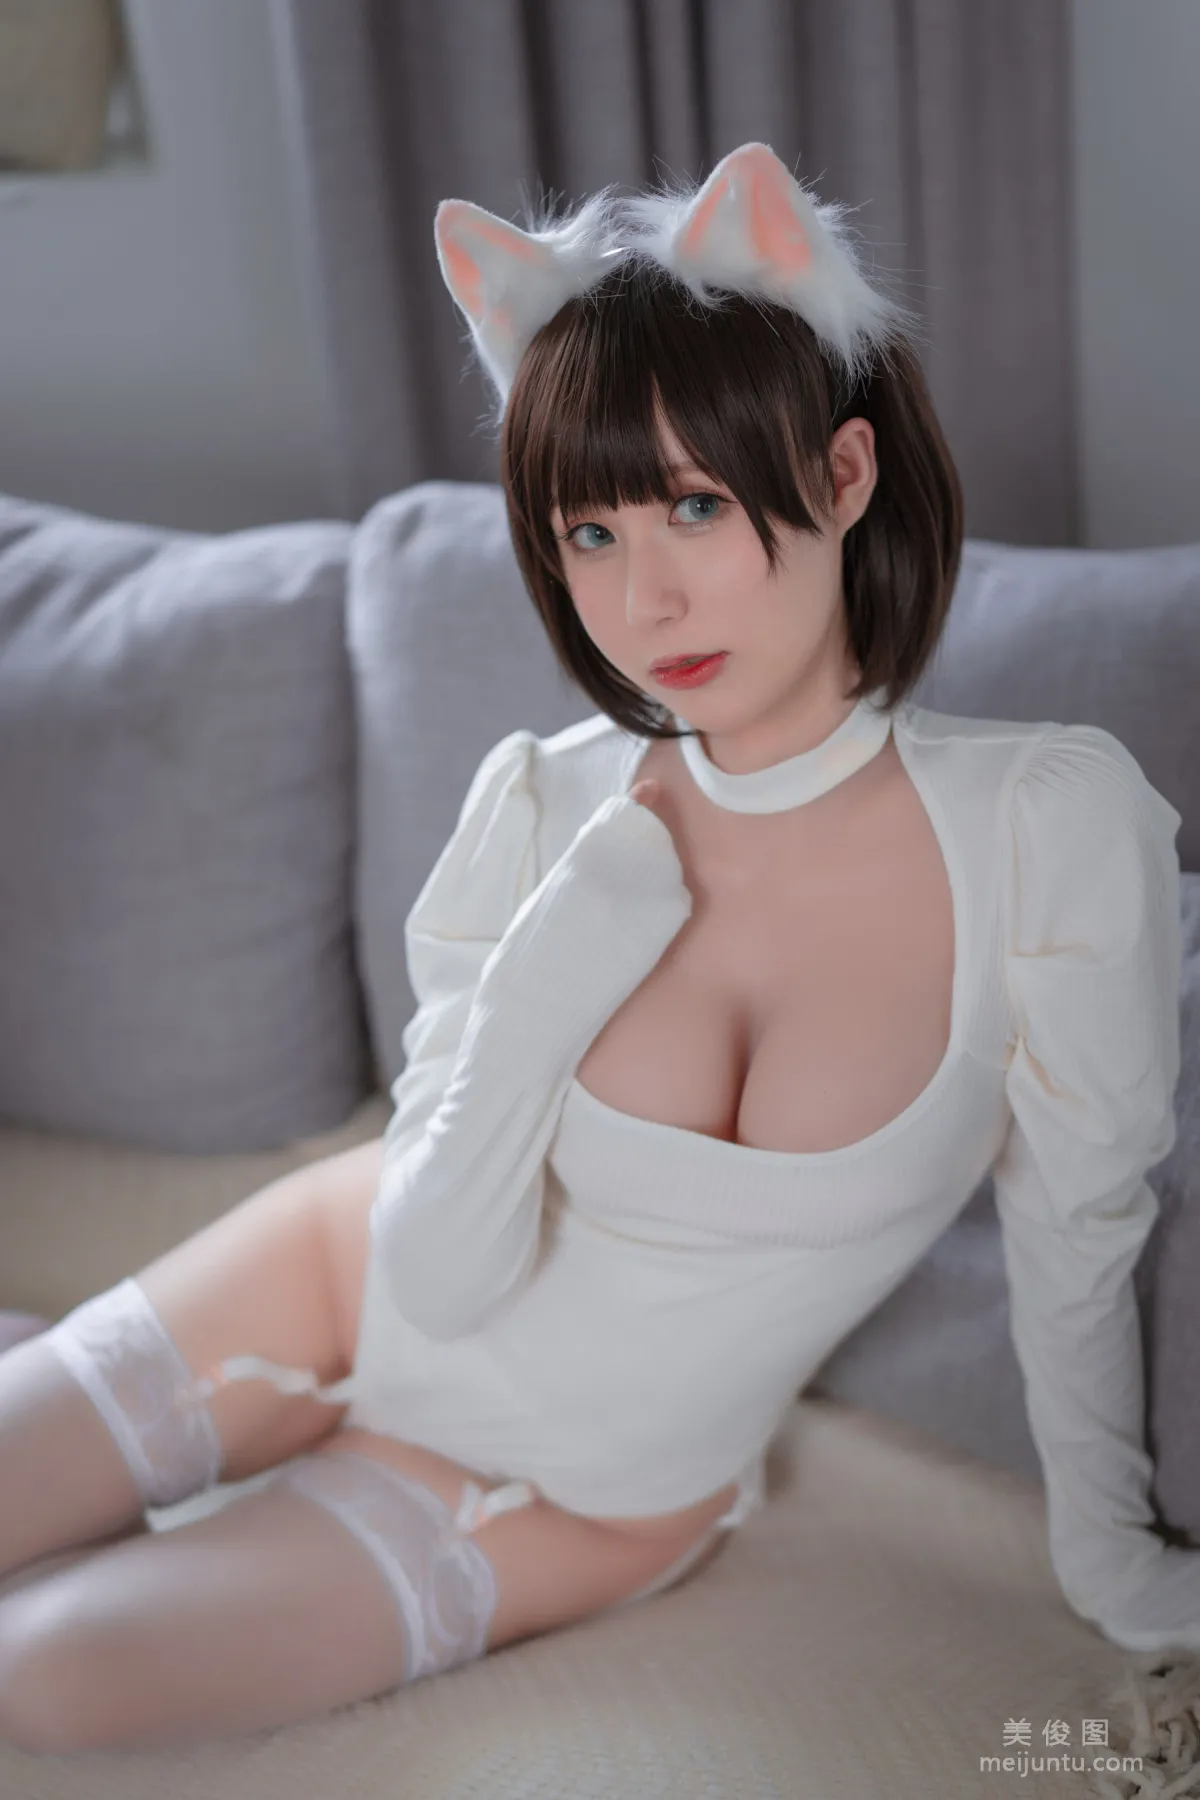 西园寺南歌 - 白猫白色连体衣 写真集10